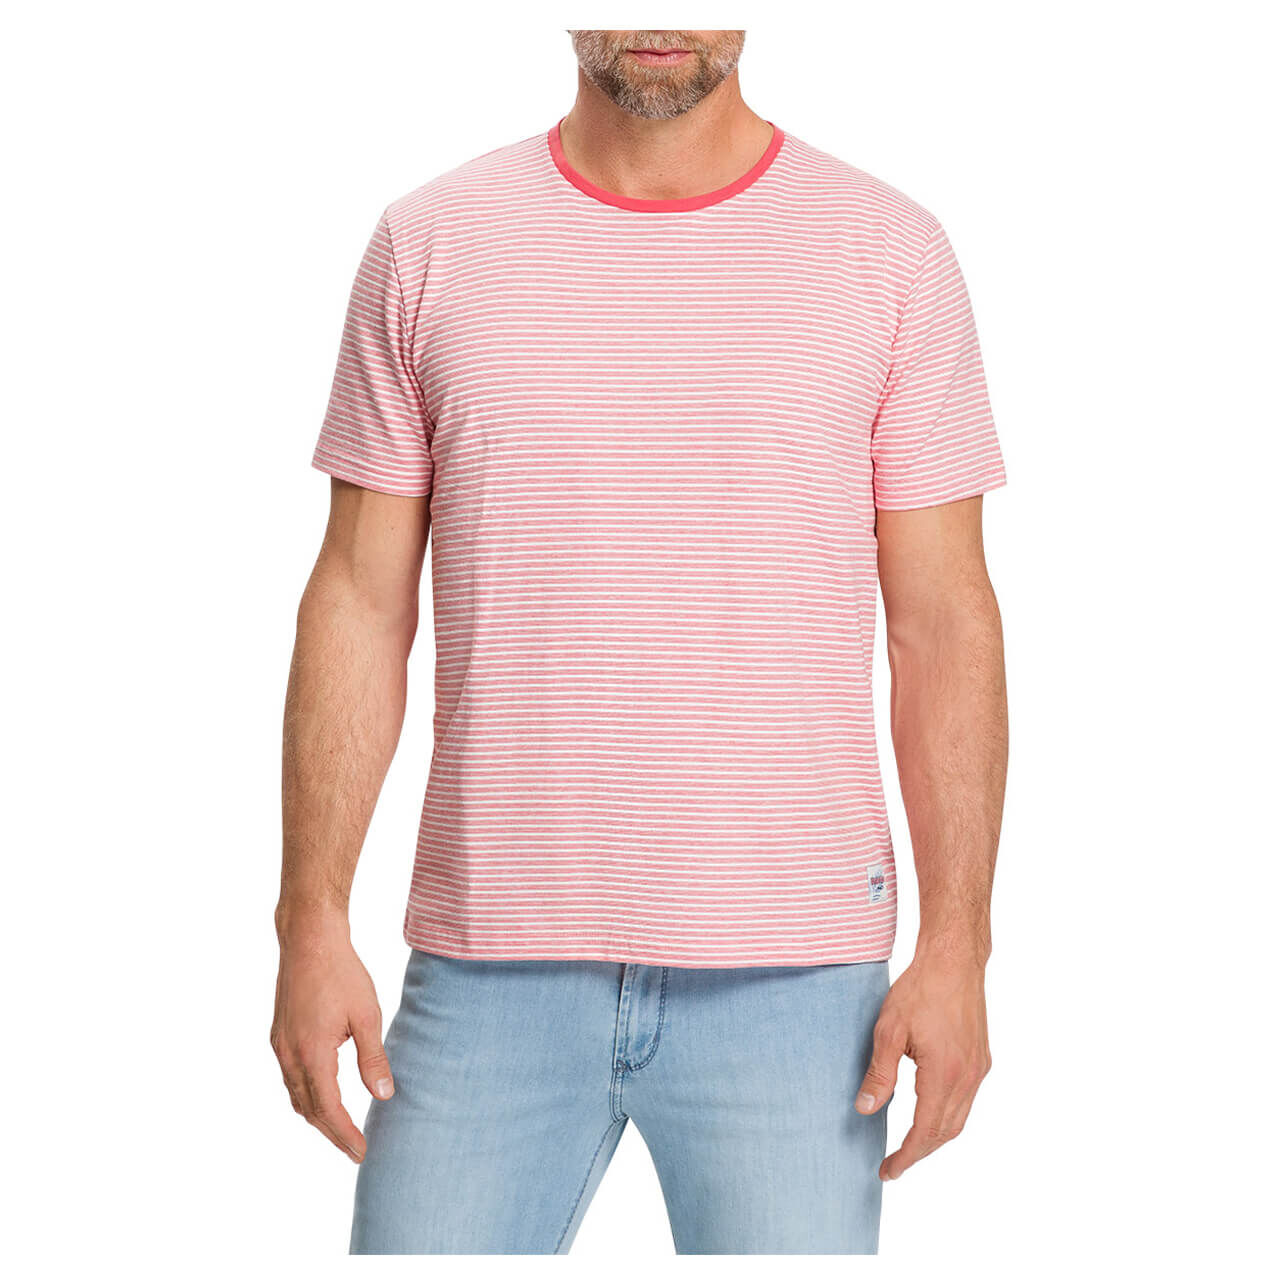 Pioneer T-Shirt für Herren in Hellrot gestreift, FarbNr.: 4706